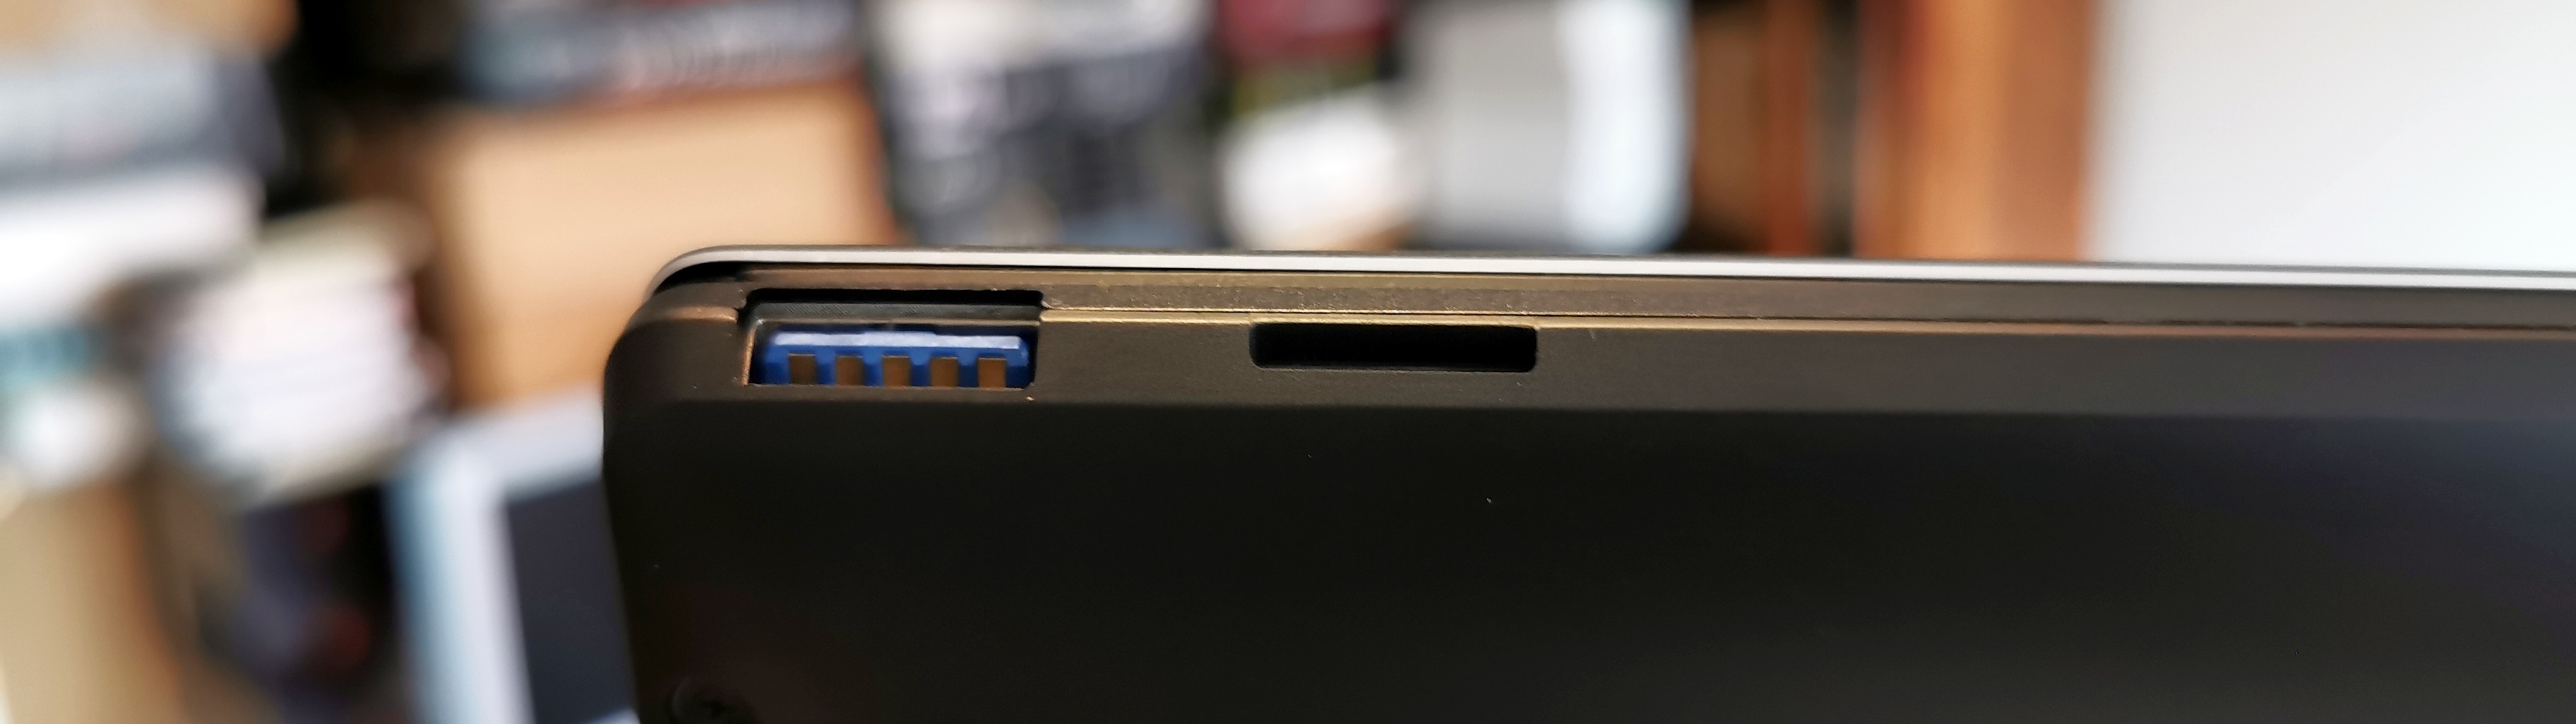 HP USB Fingerprint Reader SK-3350